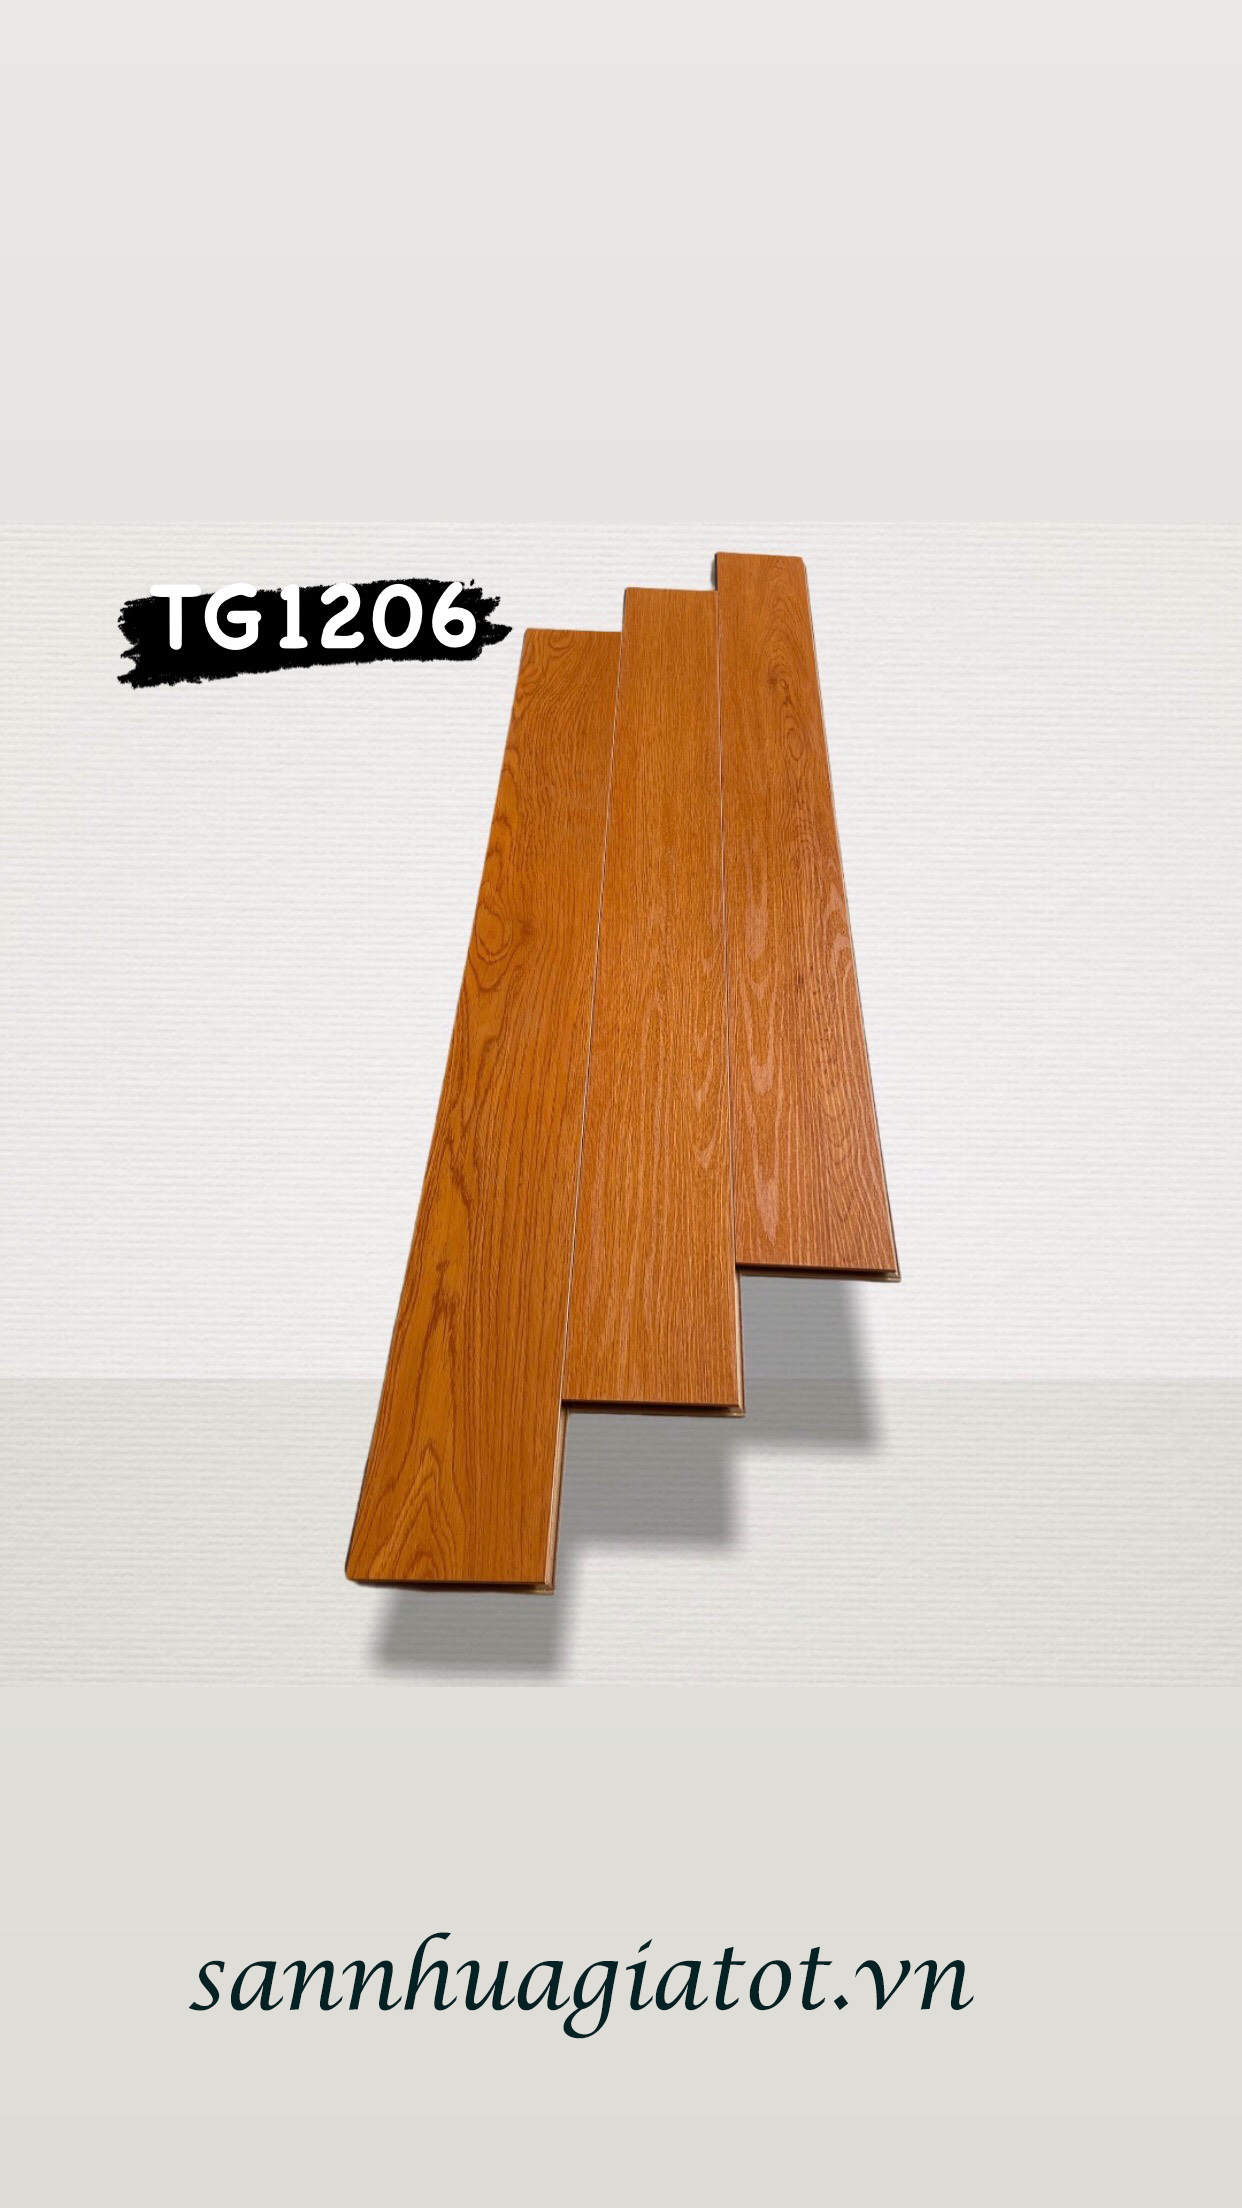 Sàn gỗ công nghiệp Đức Muller dày 12mm cốt thường mã TG1206